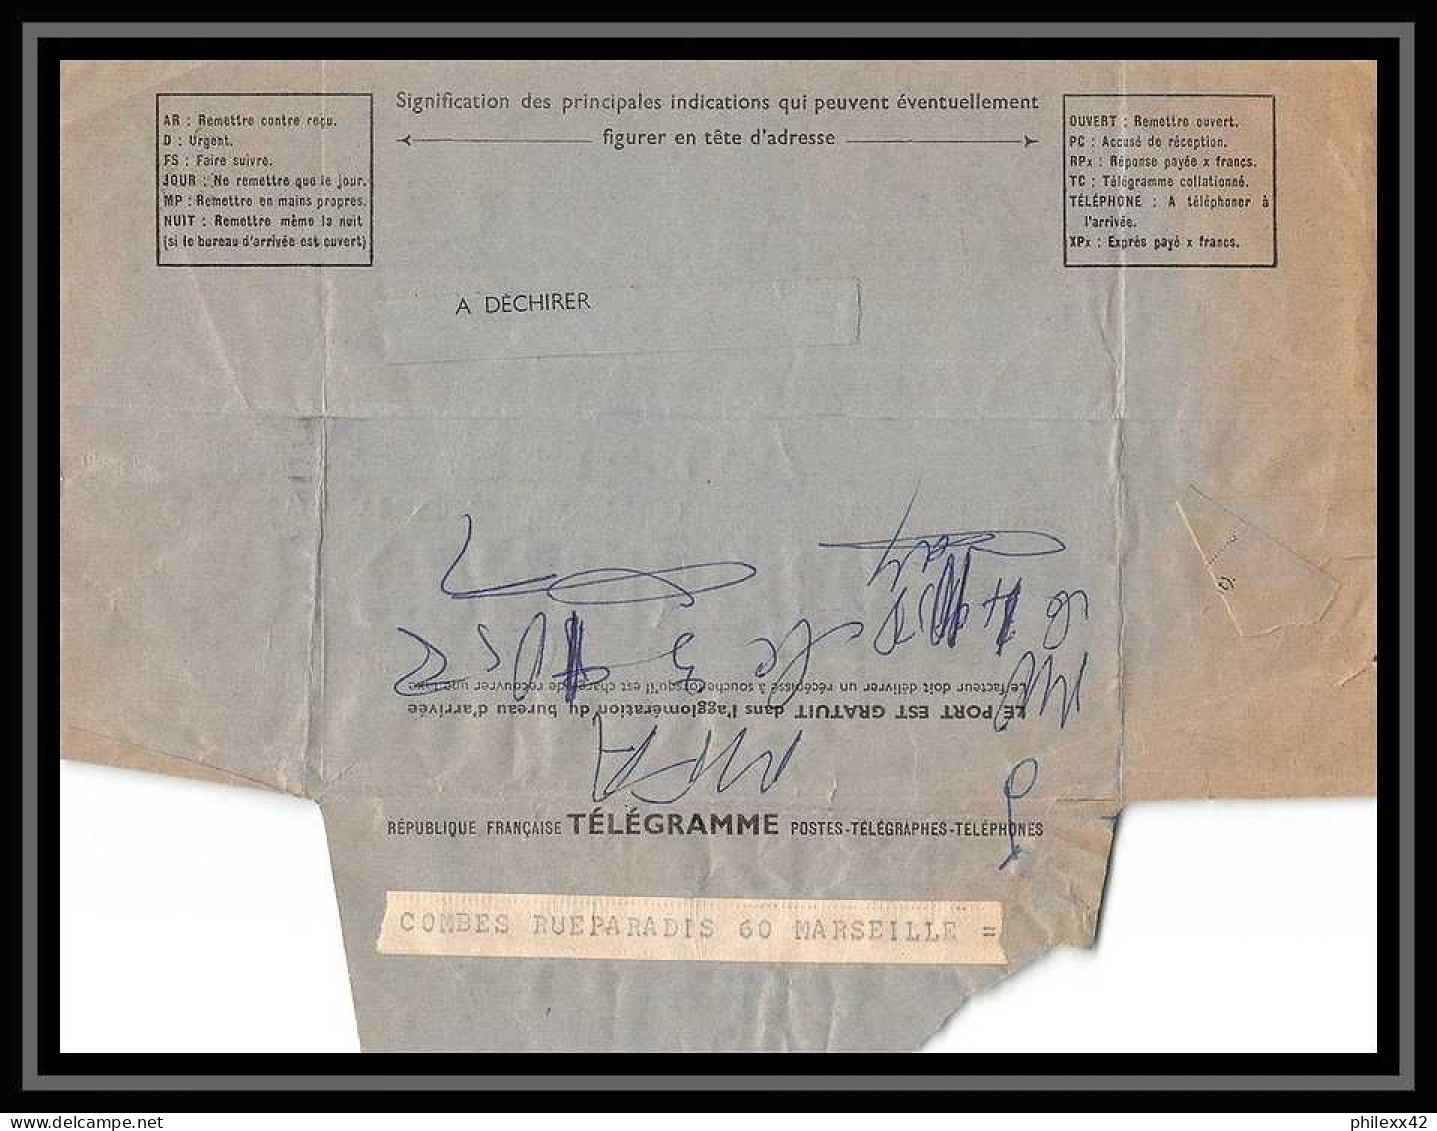 108050 LOT DE 16 Lettres dont recommandé et télégramme Bouches du rhone Marseille saint ferréol daguin